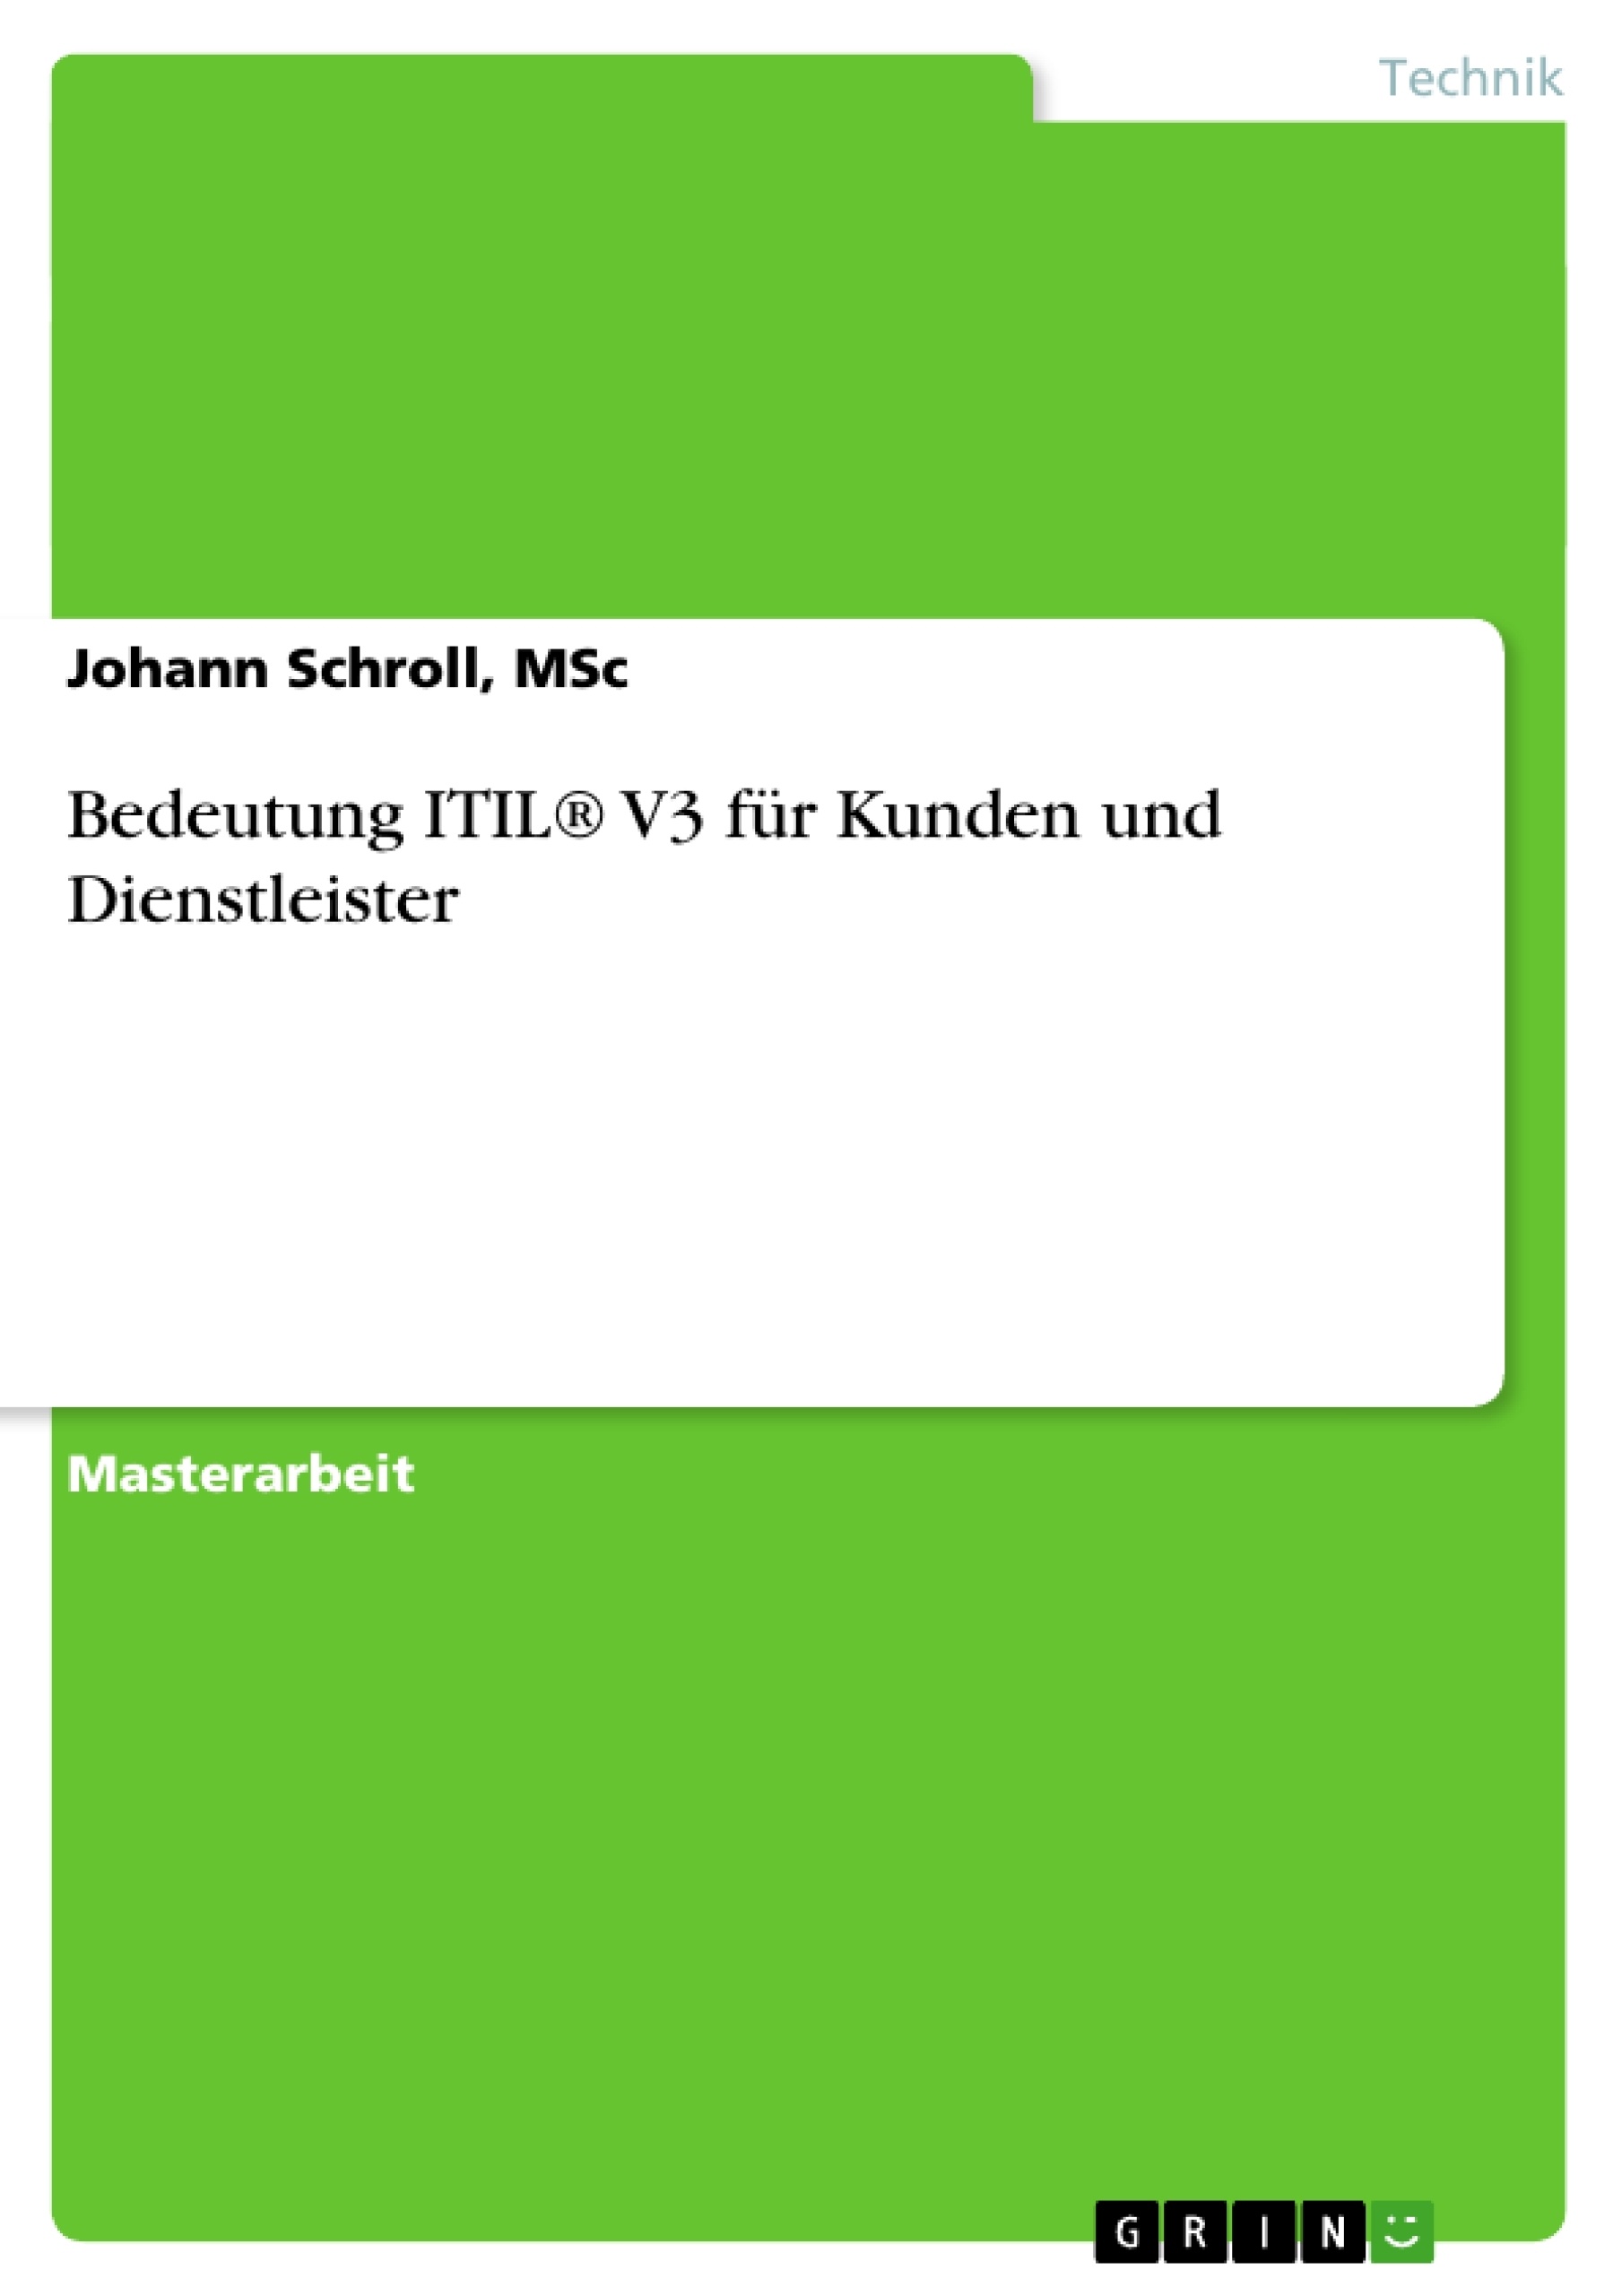 Title: Bedeutung ITIL® V3 für Kunden und Dienstleister